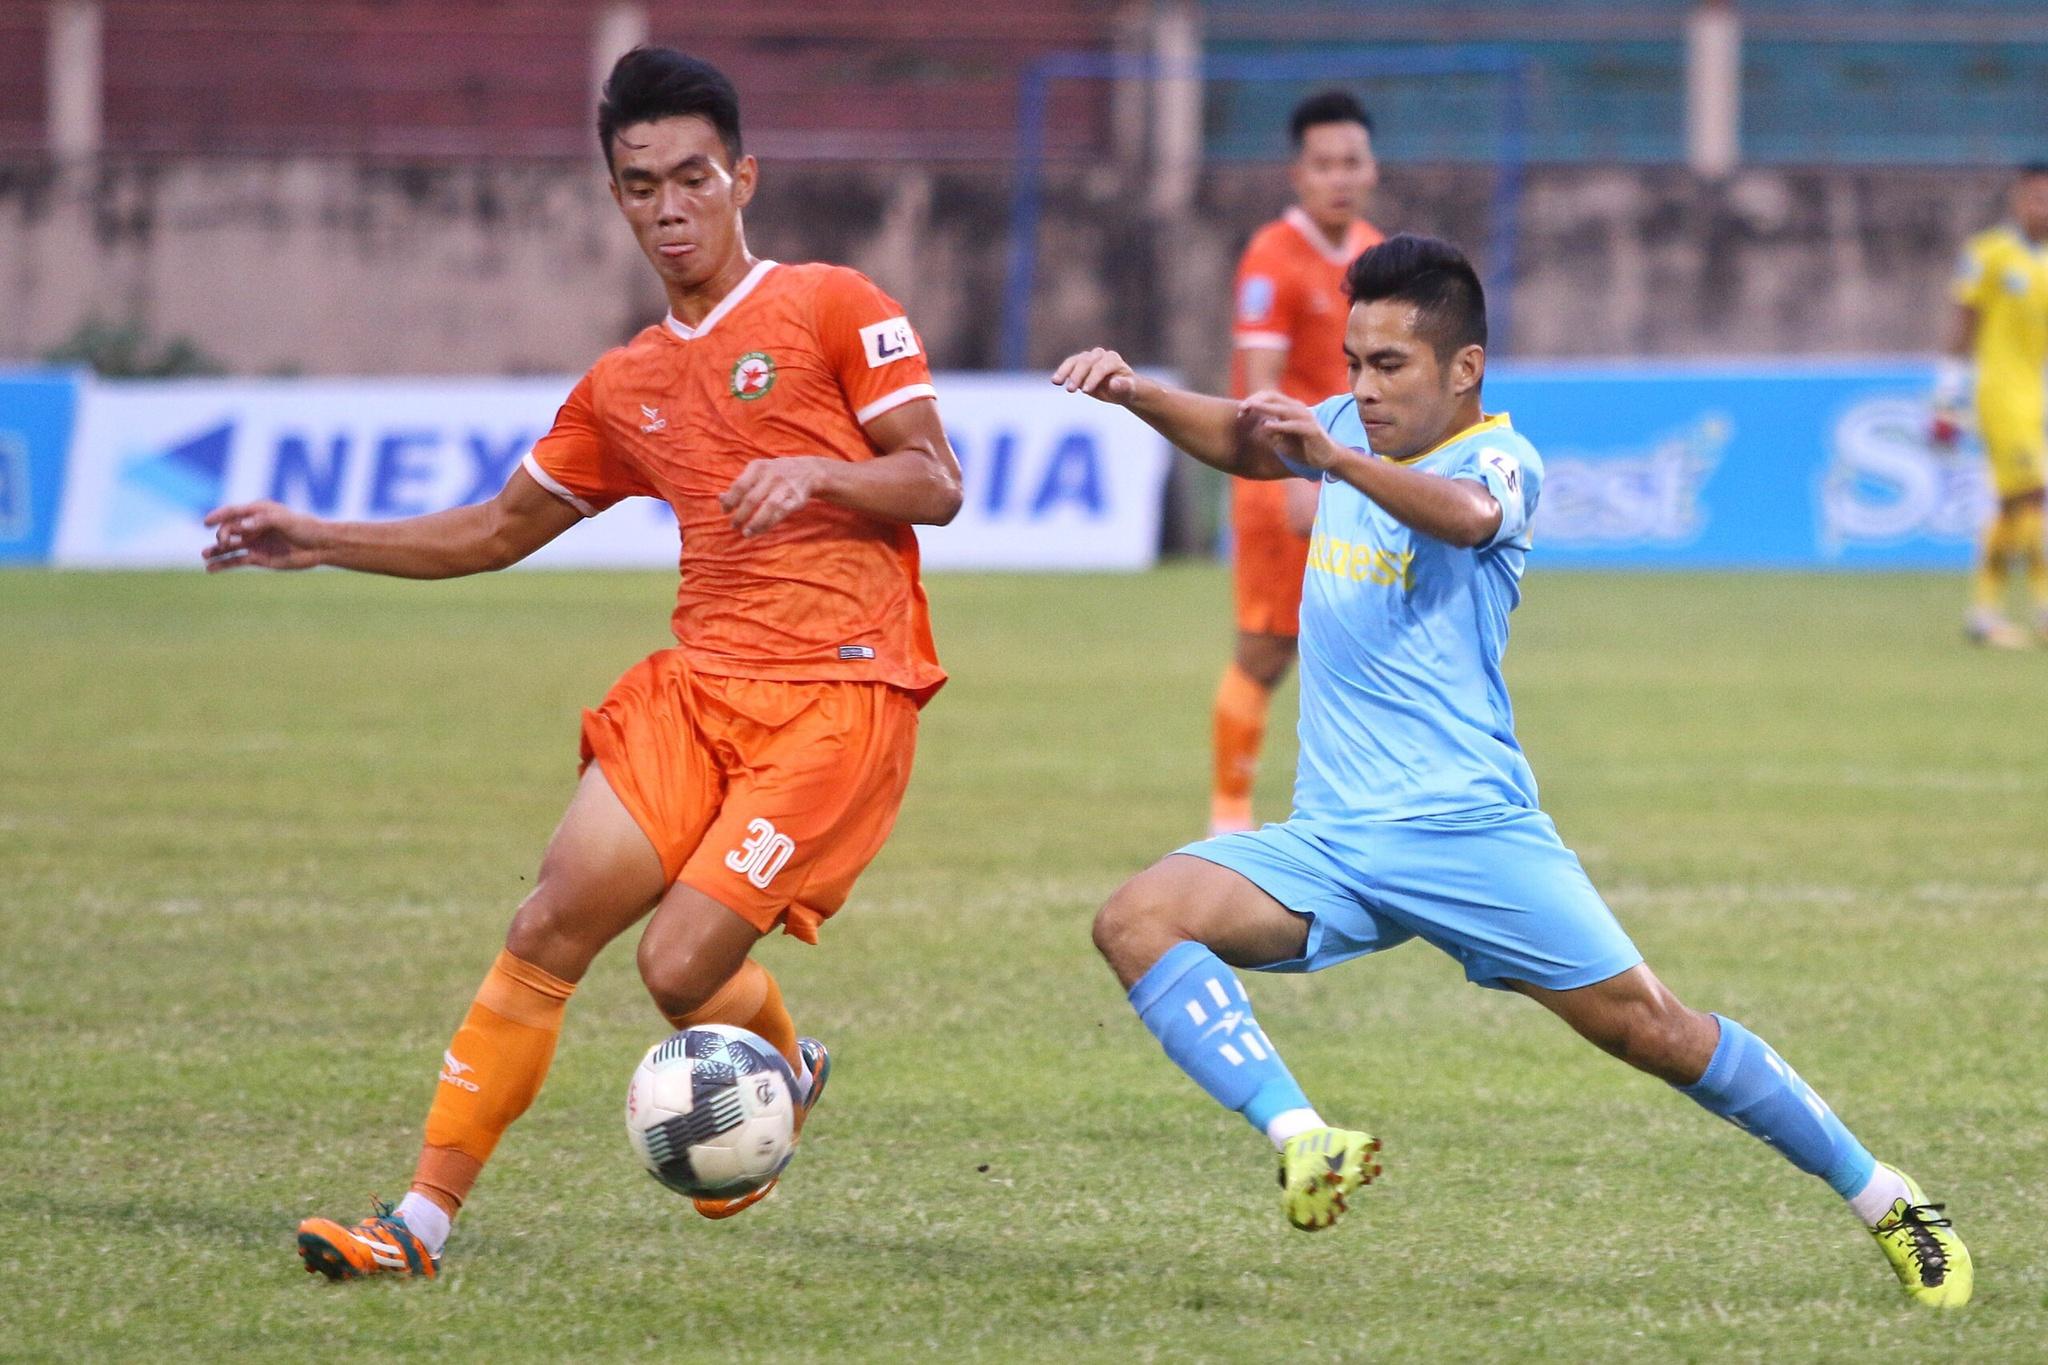 Gió xoay chiều, Bình Định sáng cửa trở lại V-League sau 12 năm - ảnh 1